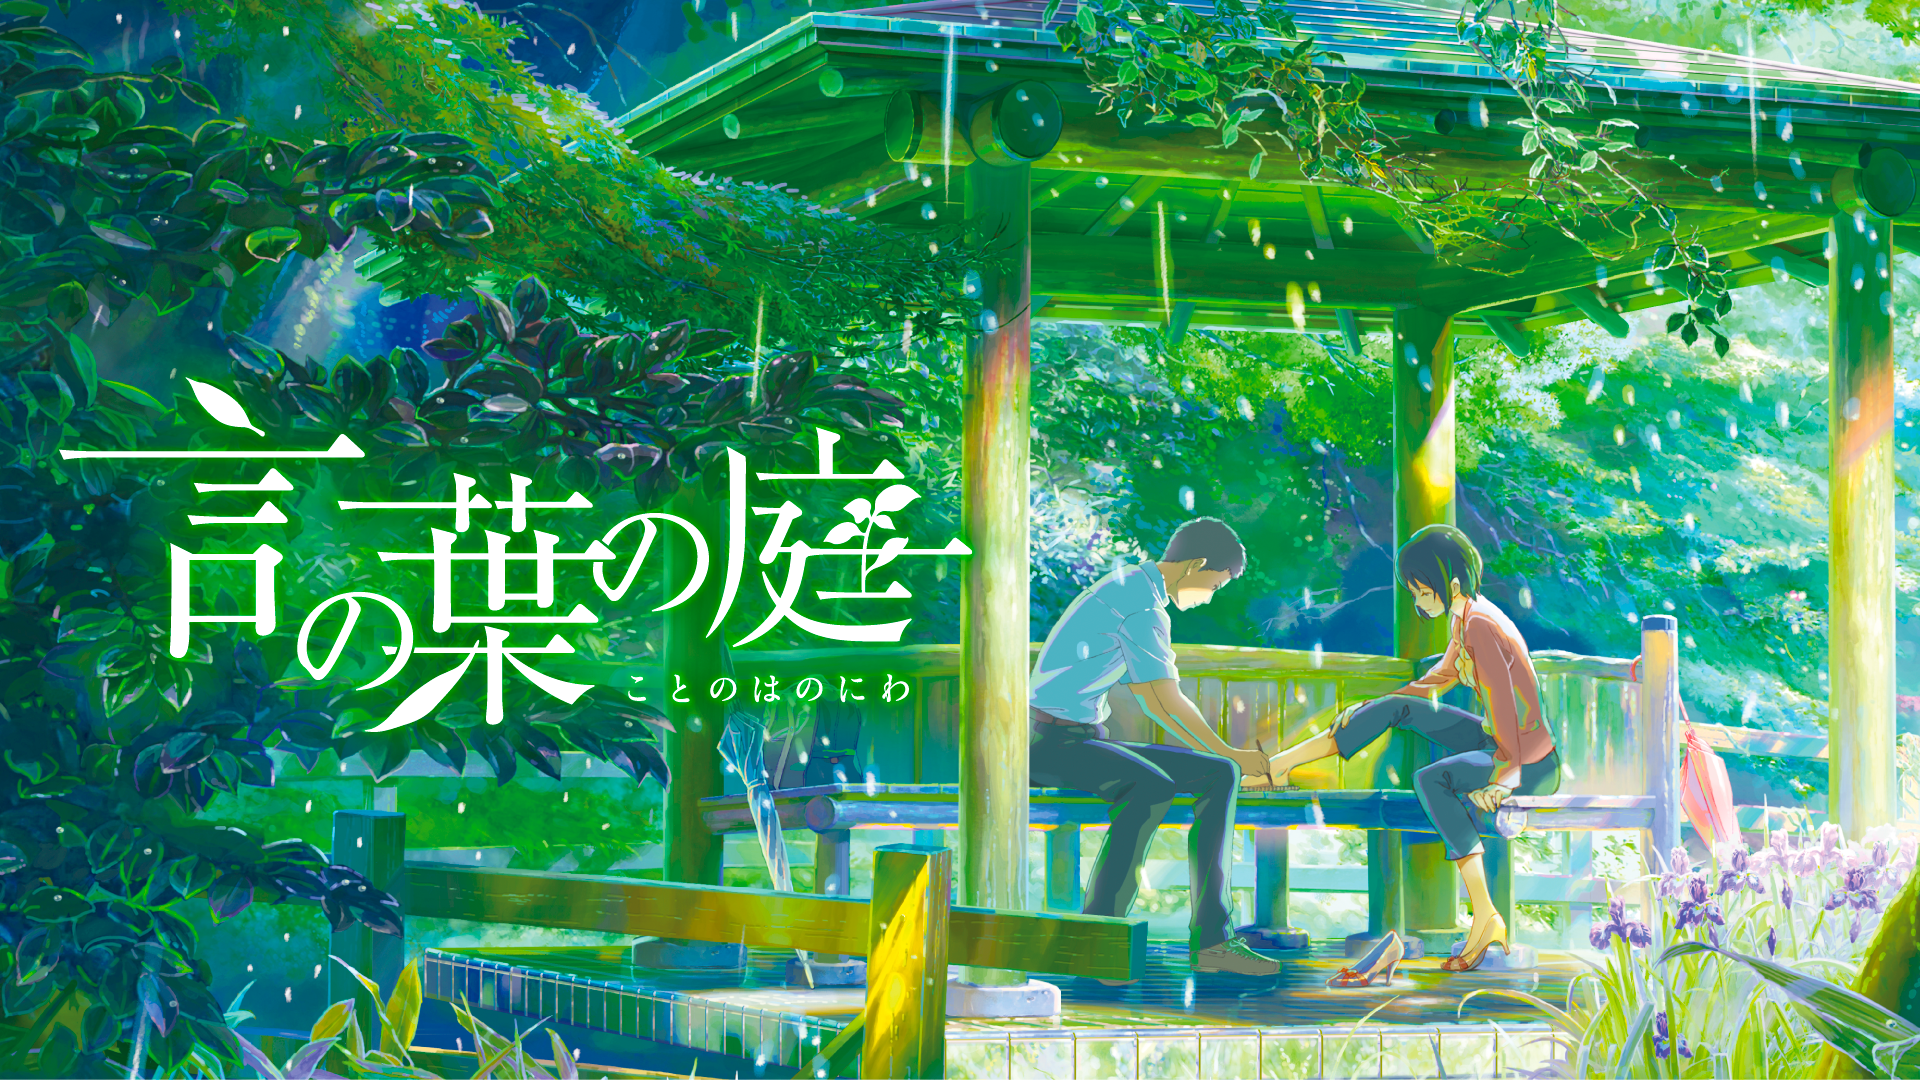 言の葉の庭 アニメ 13 の動画視聴 U Next 31日間無料トライアル